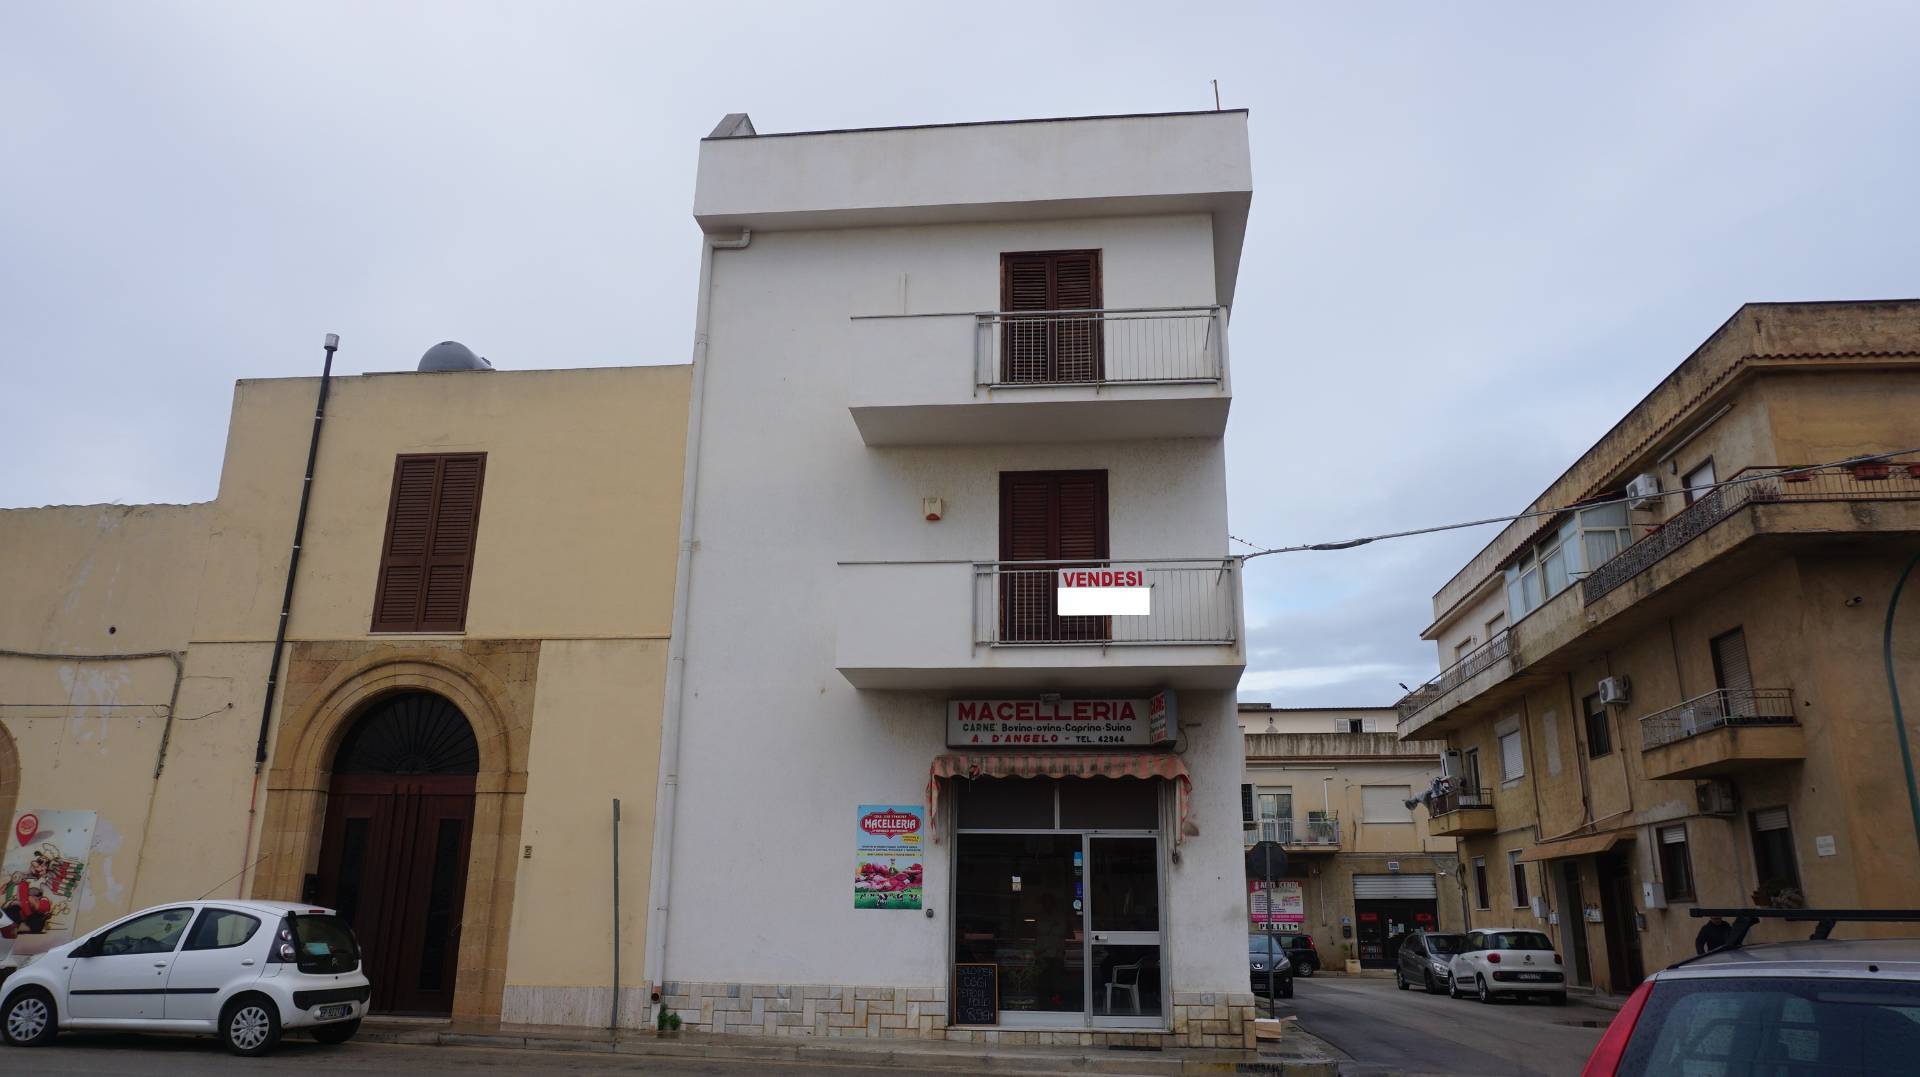 Casa indipendente con terrazzo, Castelvetrano citt?